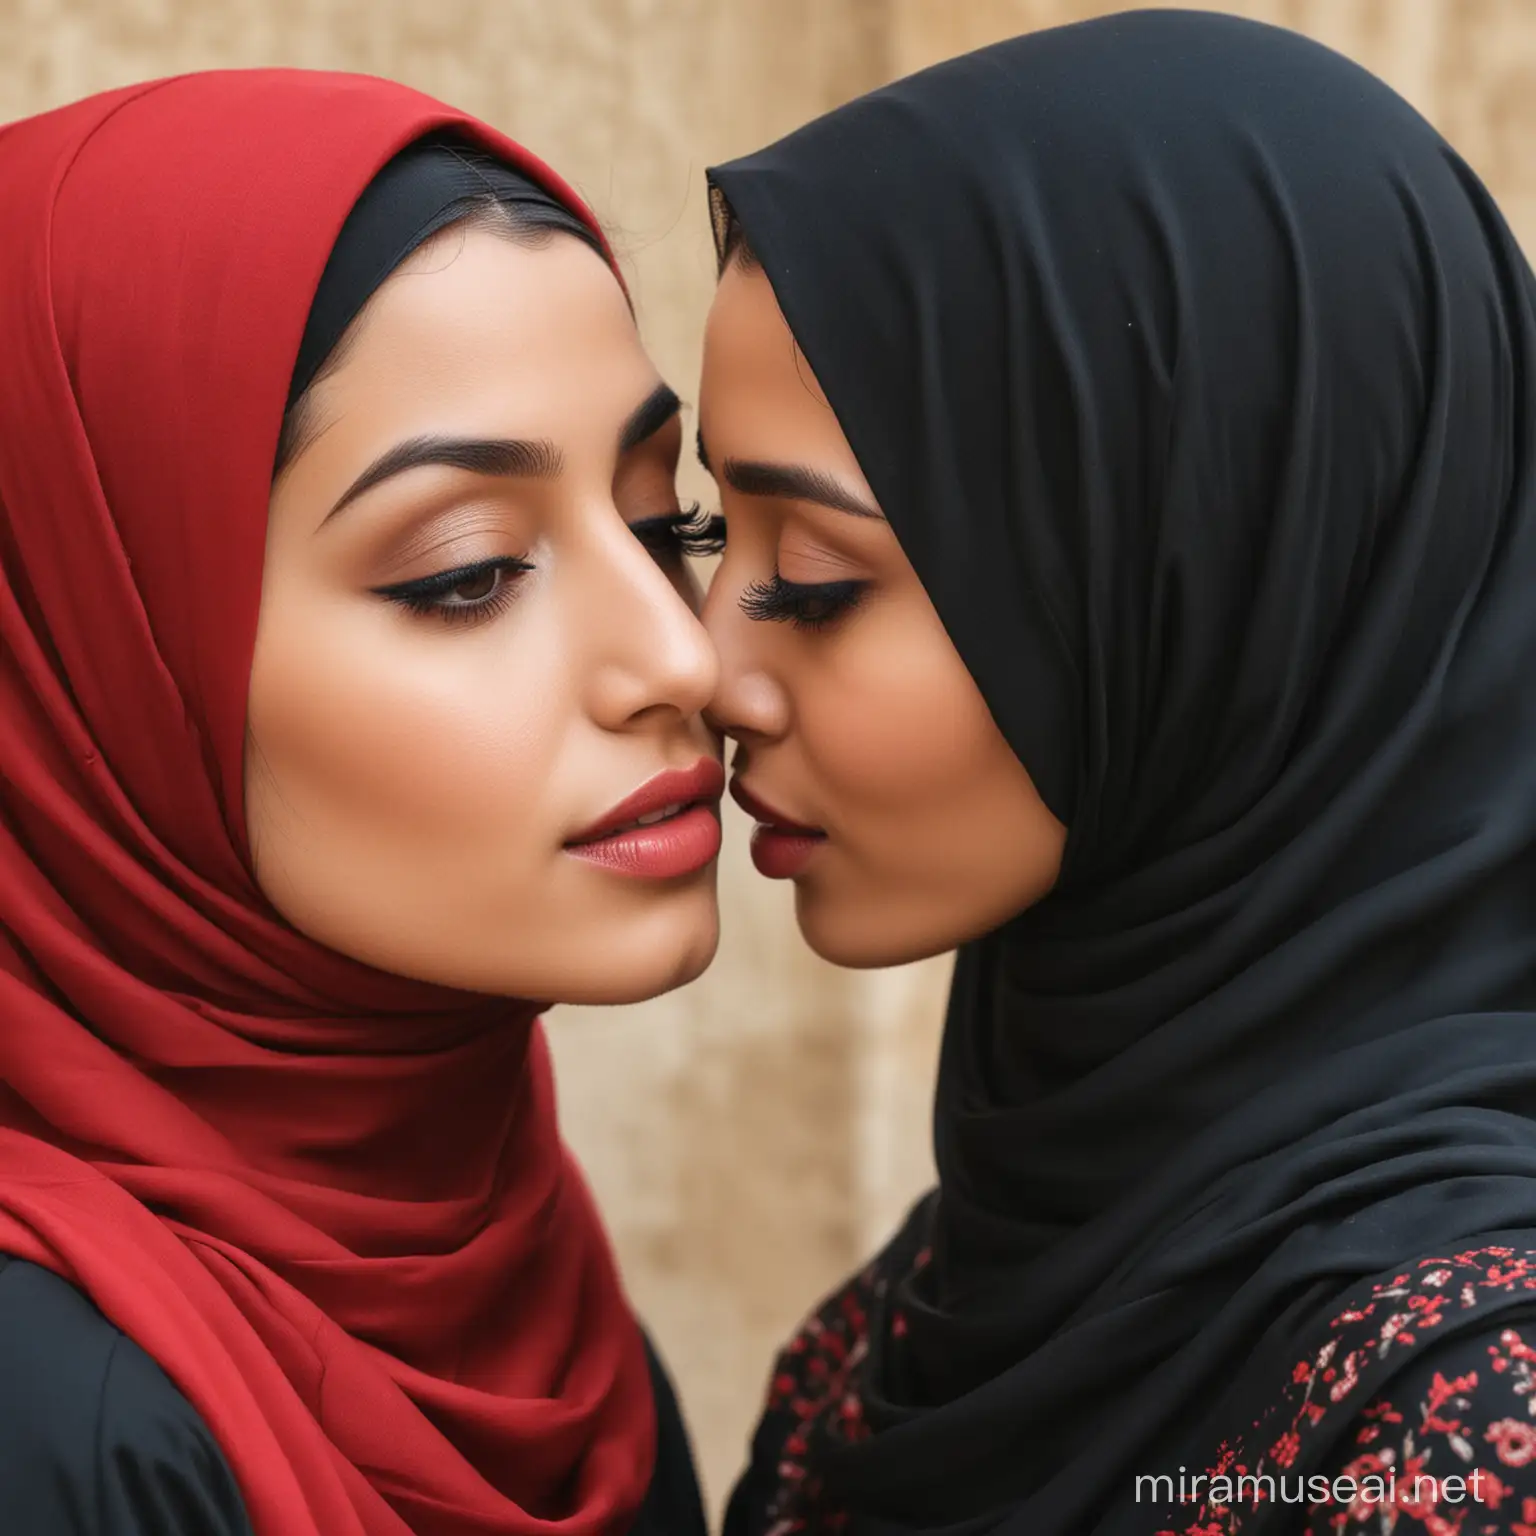 مریم و لیلا دو دختر زیبا هستند، مریم حجابی سیاه ایرانی دارد، و لیلا حجاب سرخ عربی، هردو باهم دوست هستند و از لب یکدیگر بوسه می‌زنند